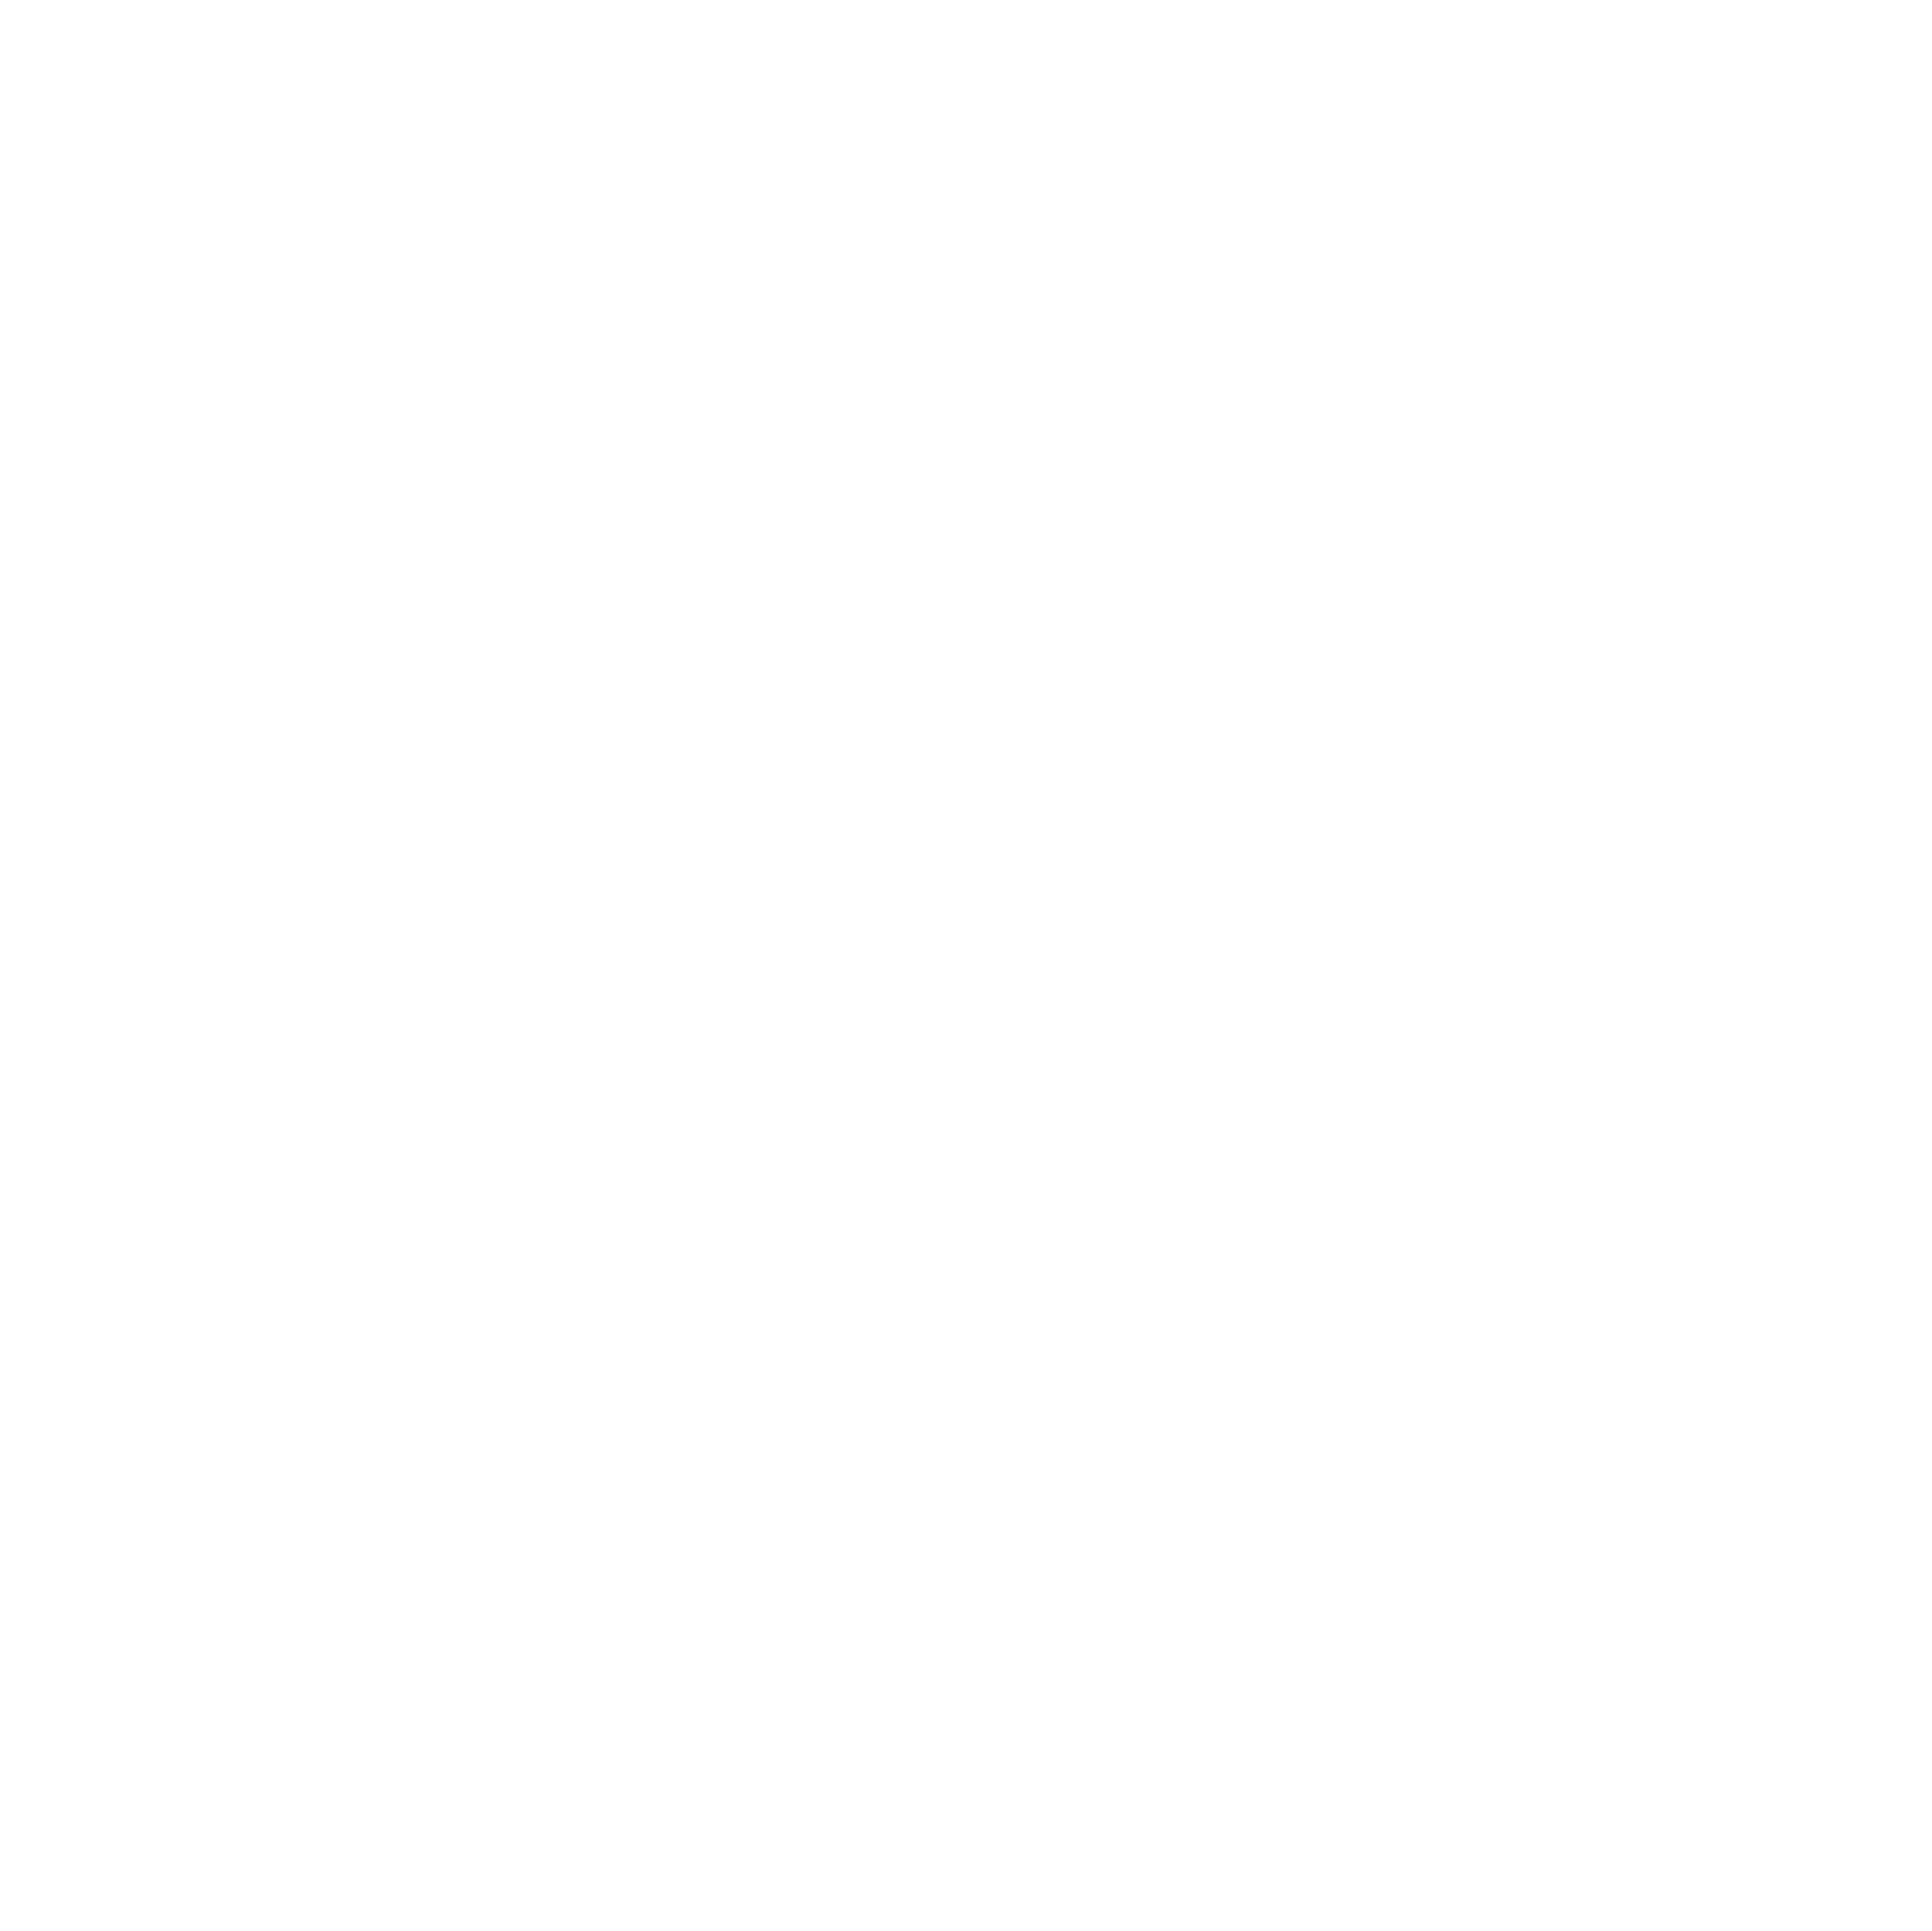 A HandMade House Artisan Goods